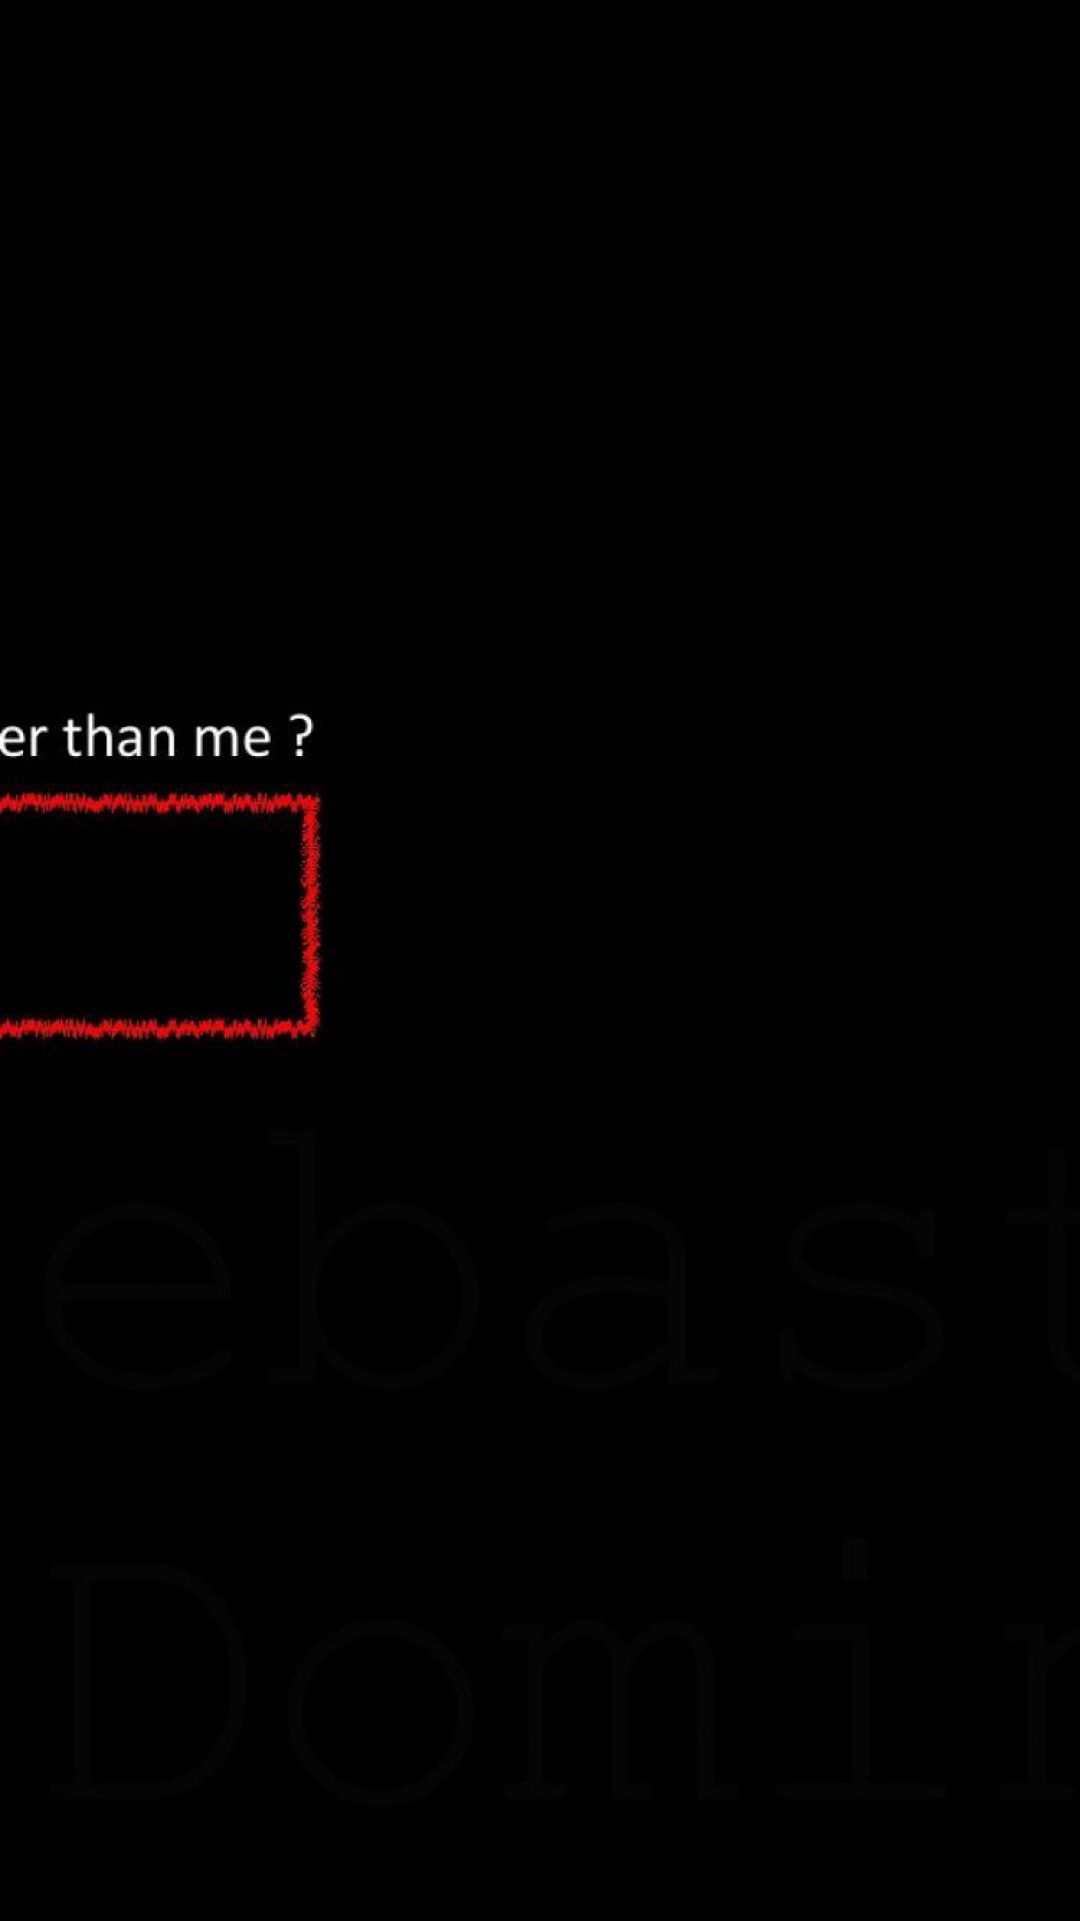 E Boy Aesthetic Image, HD Photo (1080p), Wallpaper